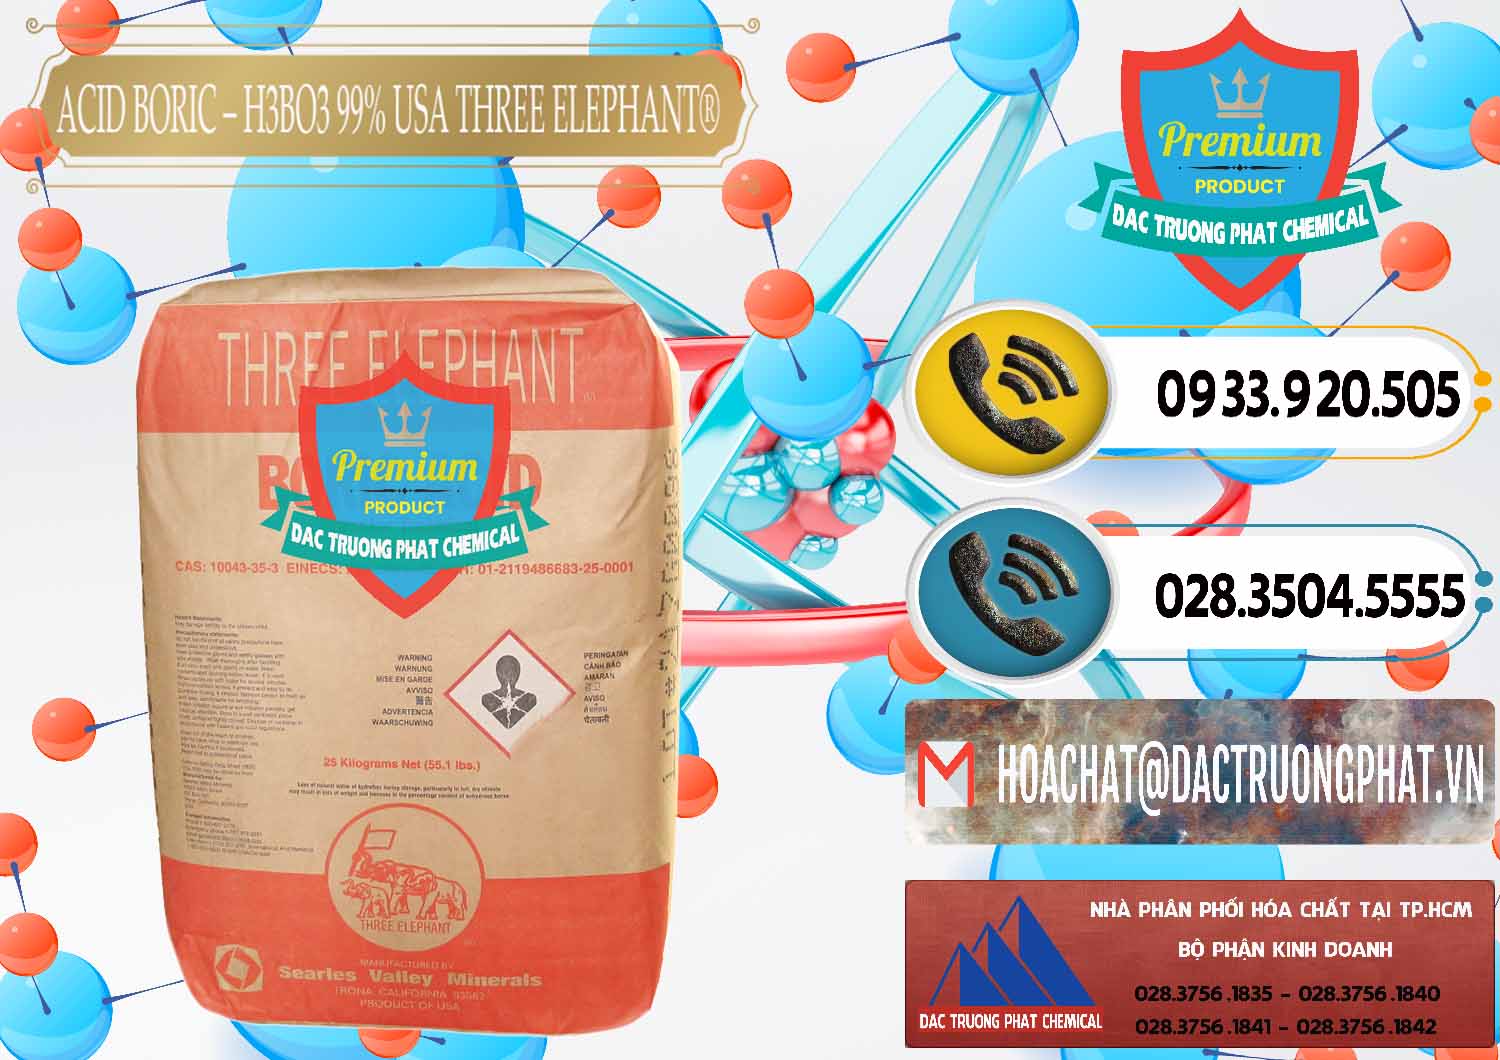 Cty chuyên cung cấp - bán Acid Boric – Axit Boric H3BO3 Mỹ USA Three Elephant® - 0005 - Chuyên bán & phân phối hóa chất tại TP.HCM - hoachatdetnhuom.vn